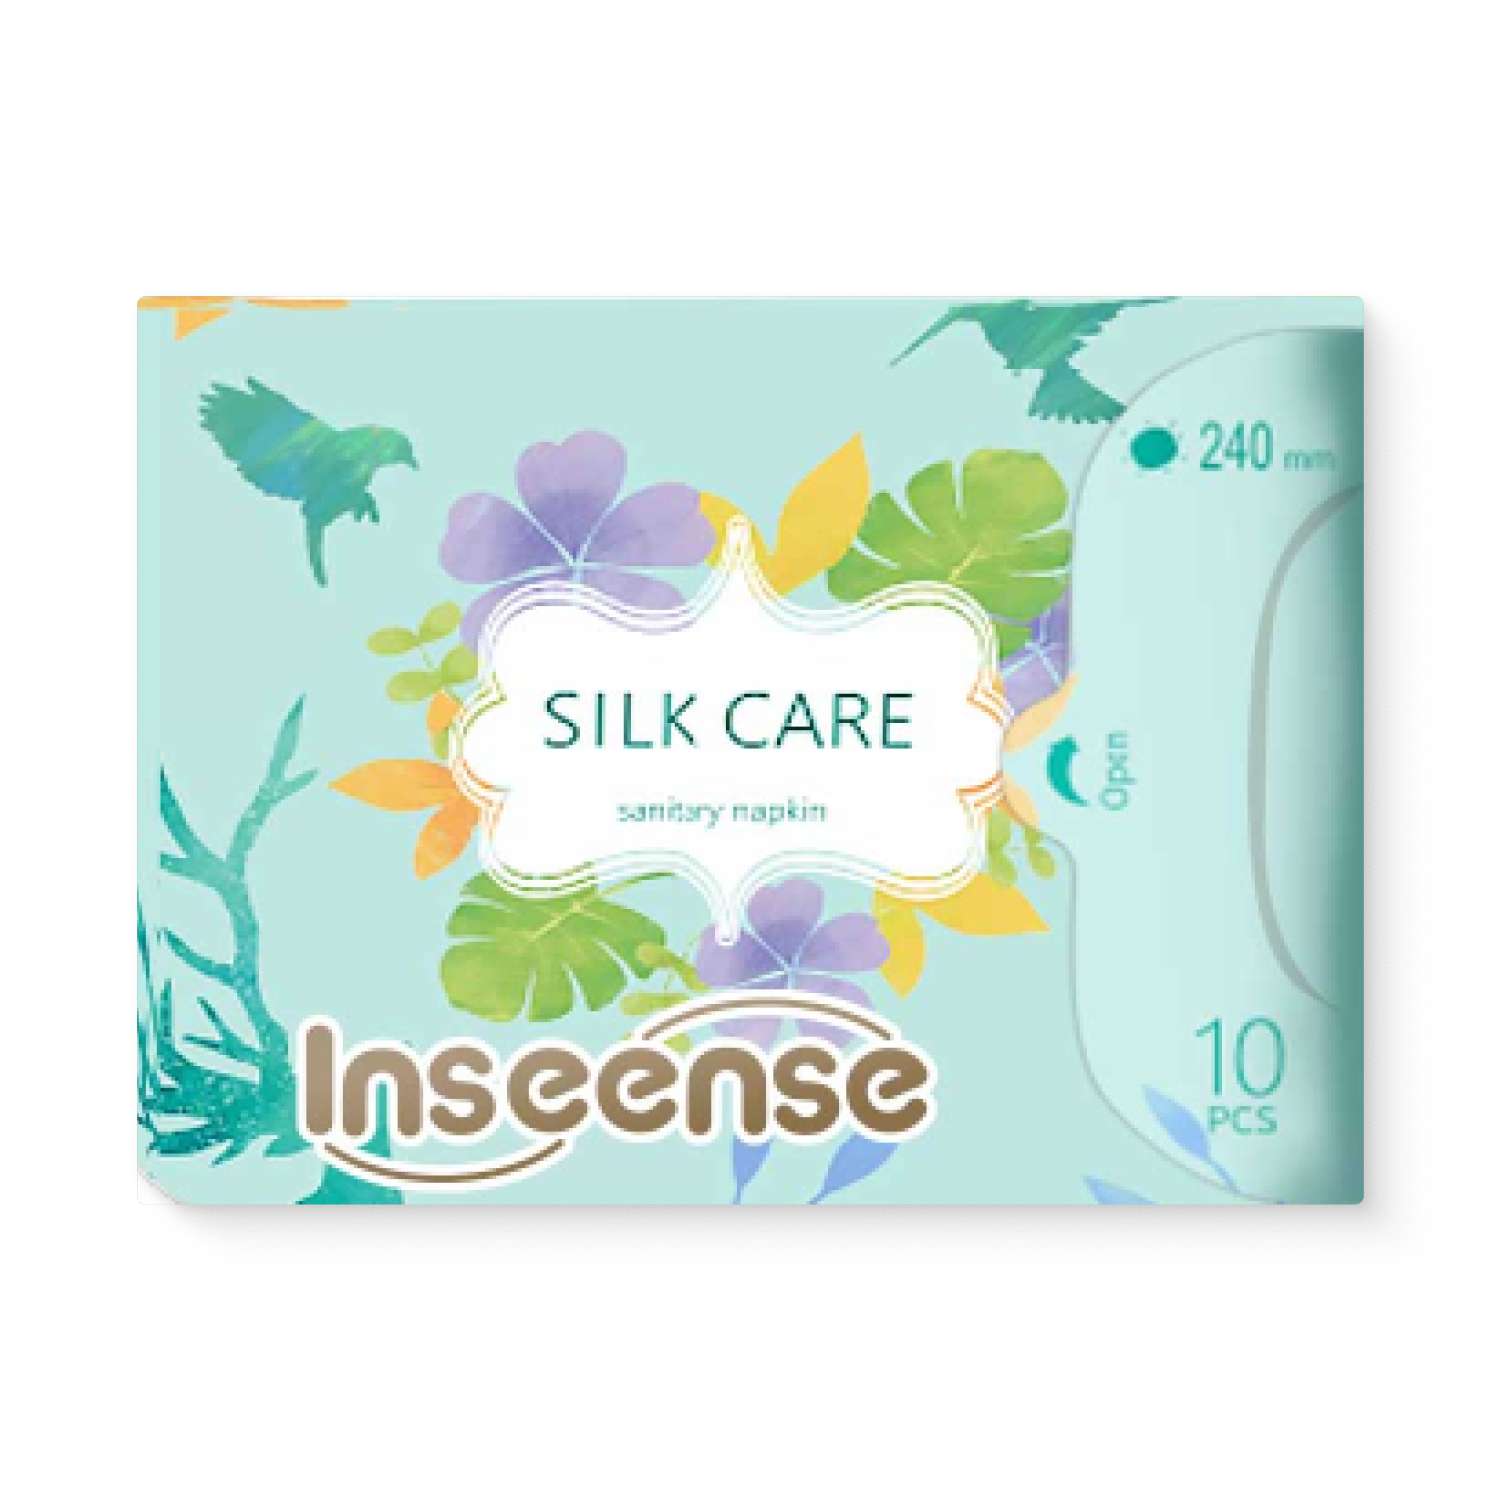 Прокладки гигиенические INSEENSE дневные Silk Care 4 капли 240 мм 10 штук - фото 2